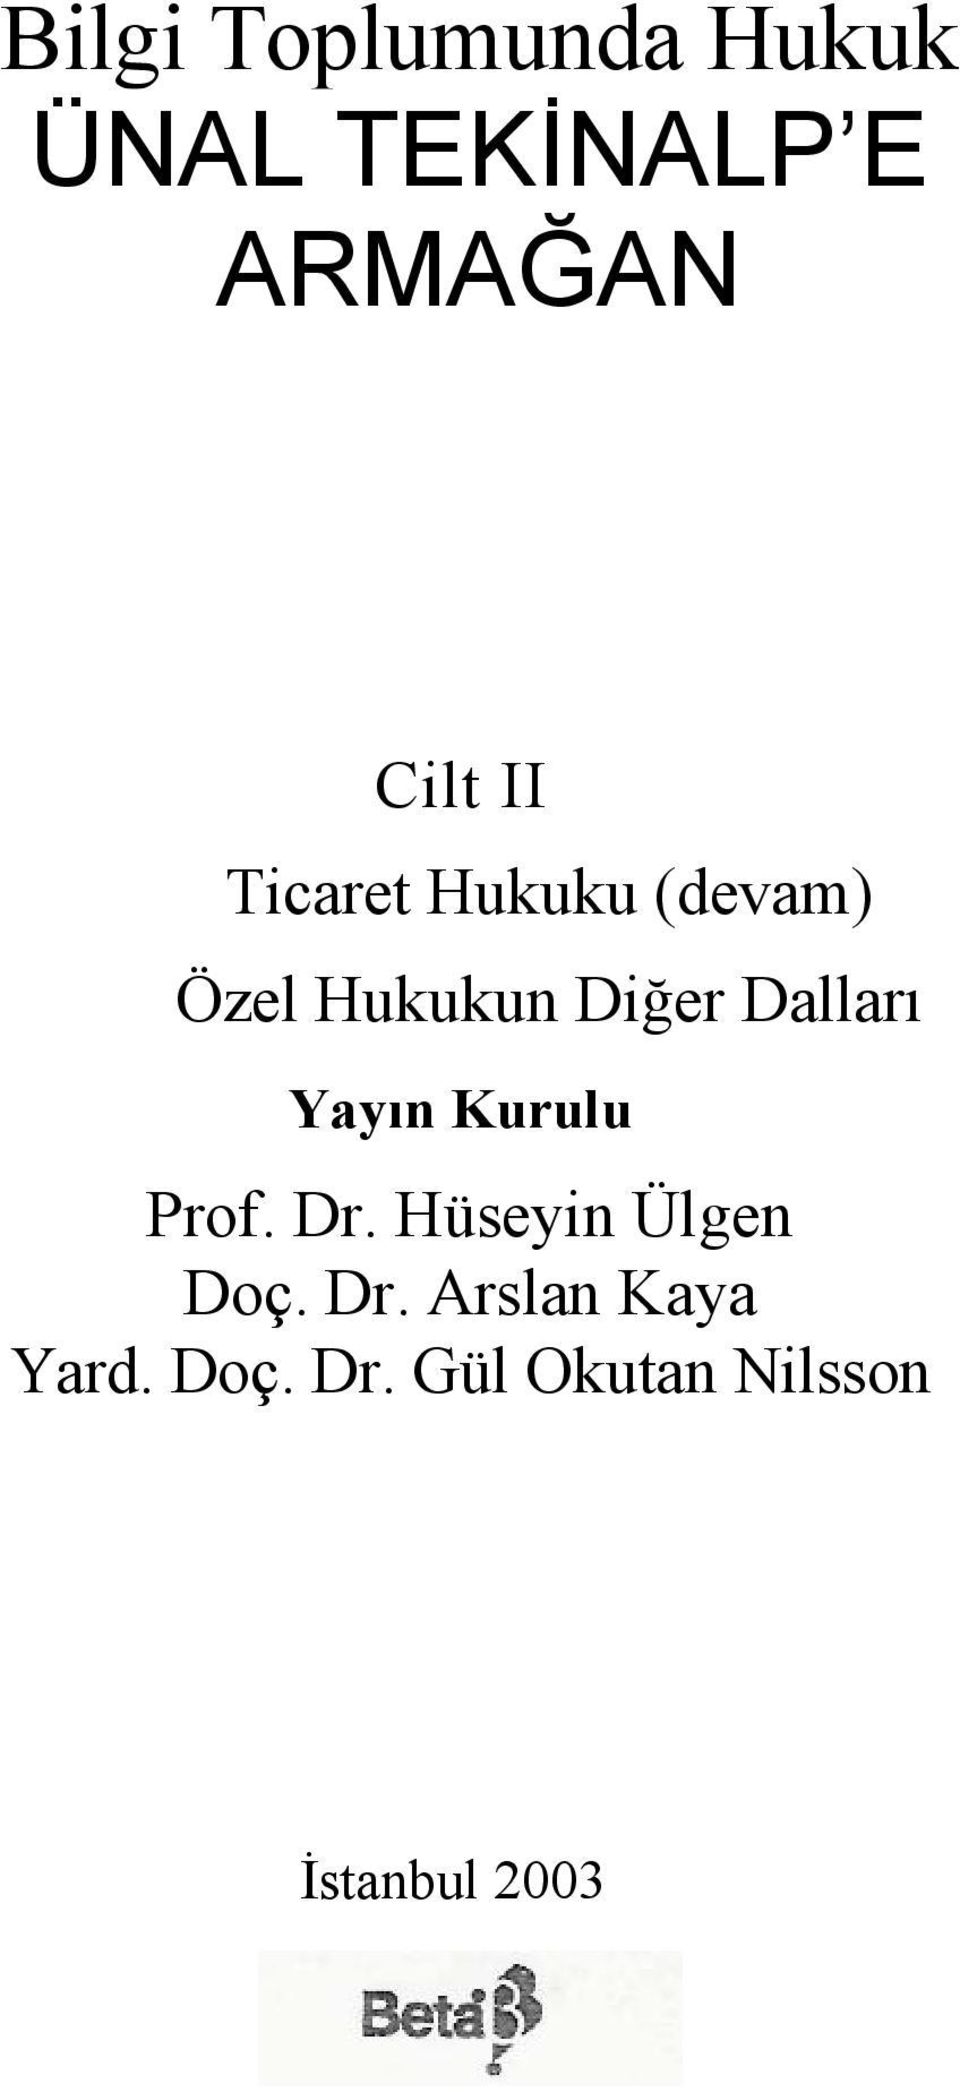 Yayın Kurulu Prof. Dr. Hüseyin Ülgen Doç. Dr. Arslan Kaya Yard.